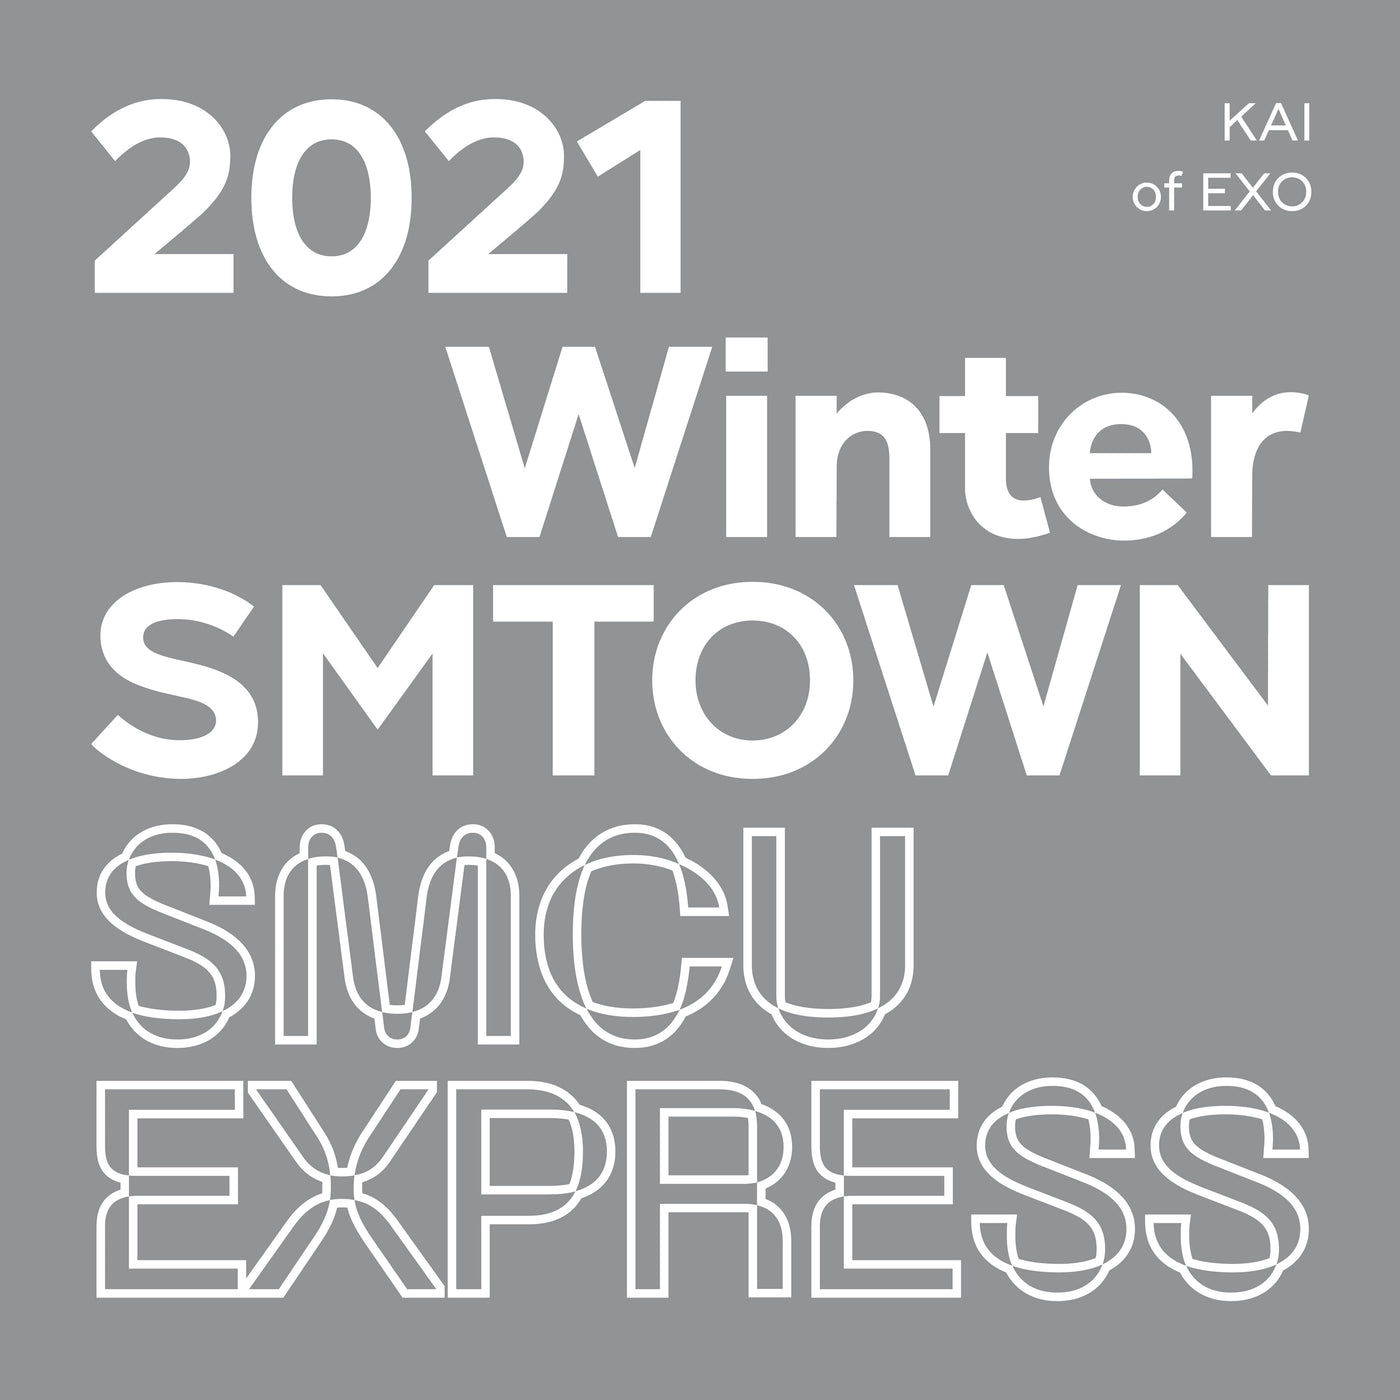 KAI 2021 Winter SMTOWN : SMCU EXPRESS (KAI of EXO) 🇰🇷